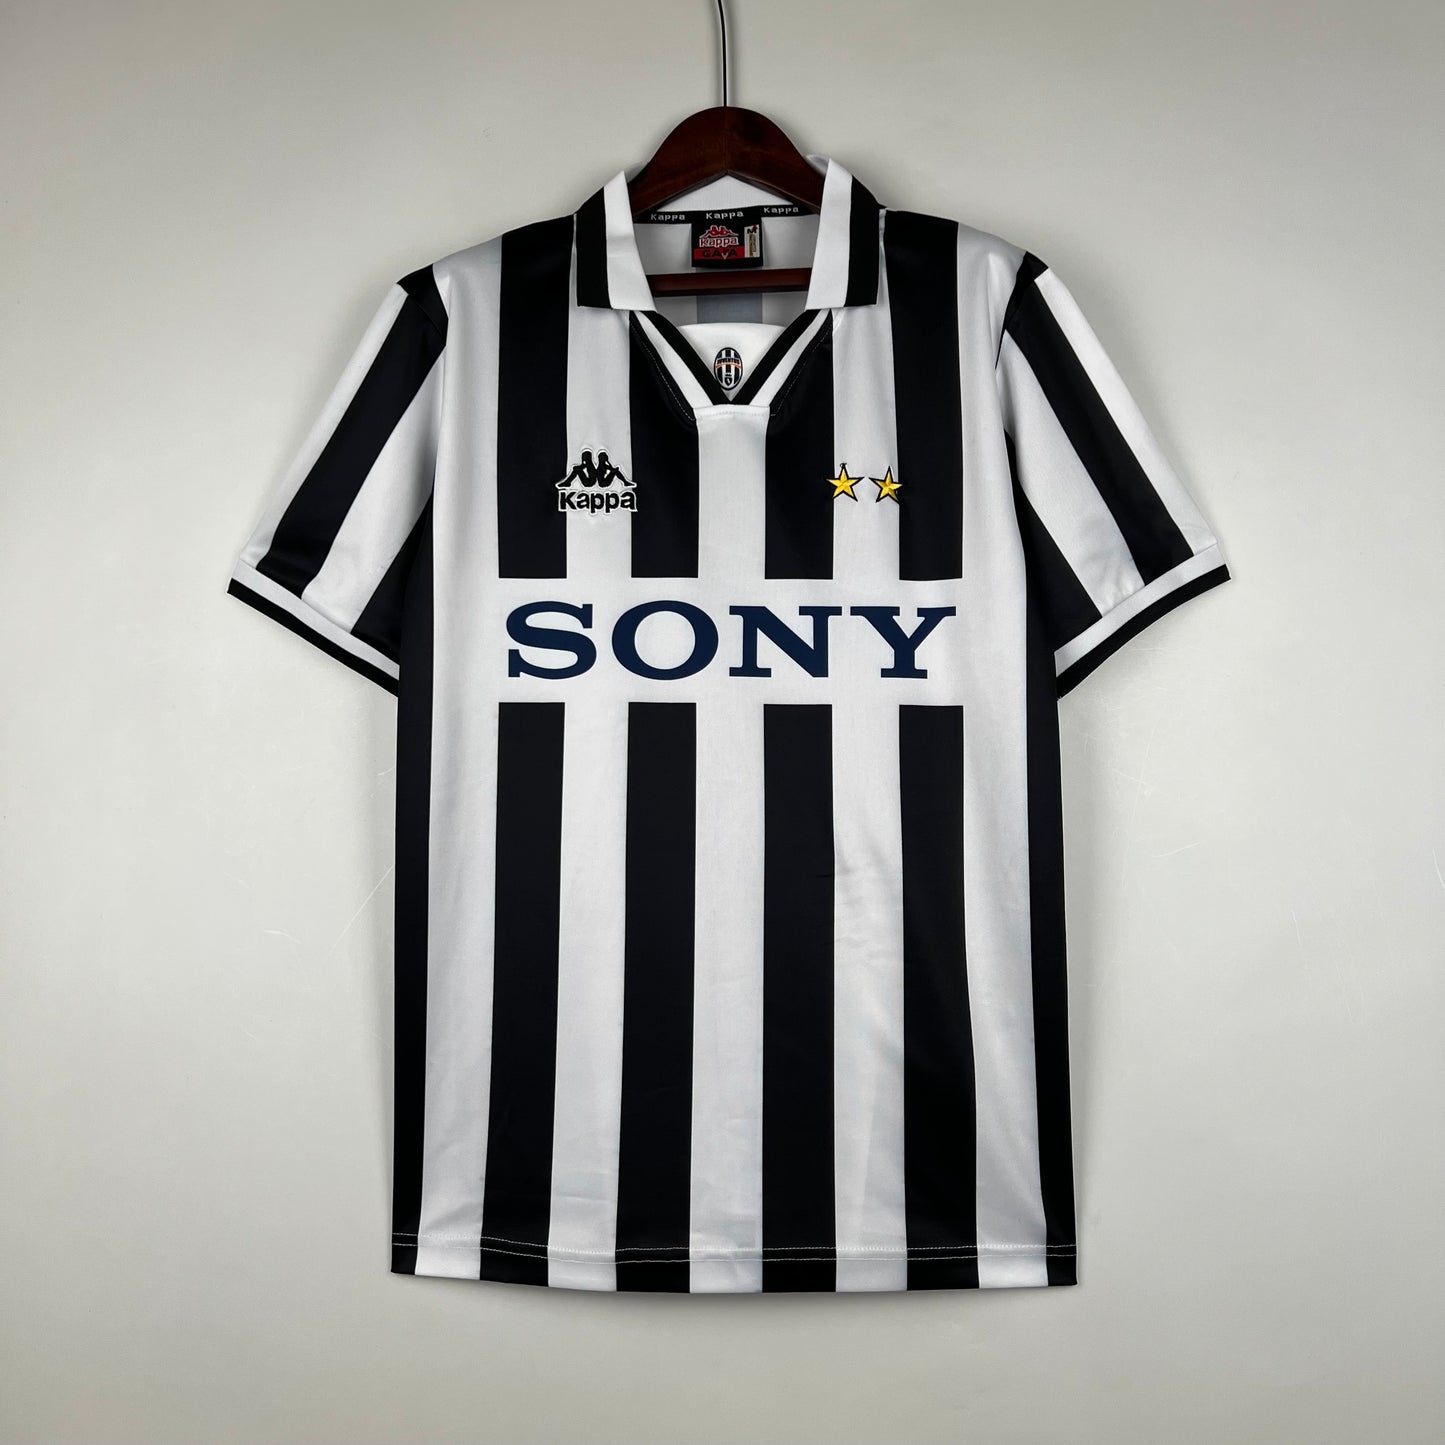 Retro Juventus 96/97 Home Kit